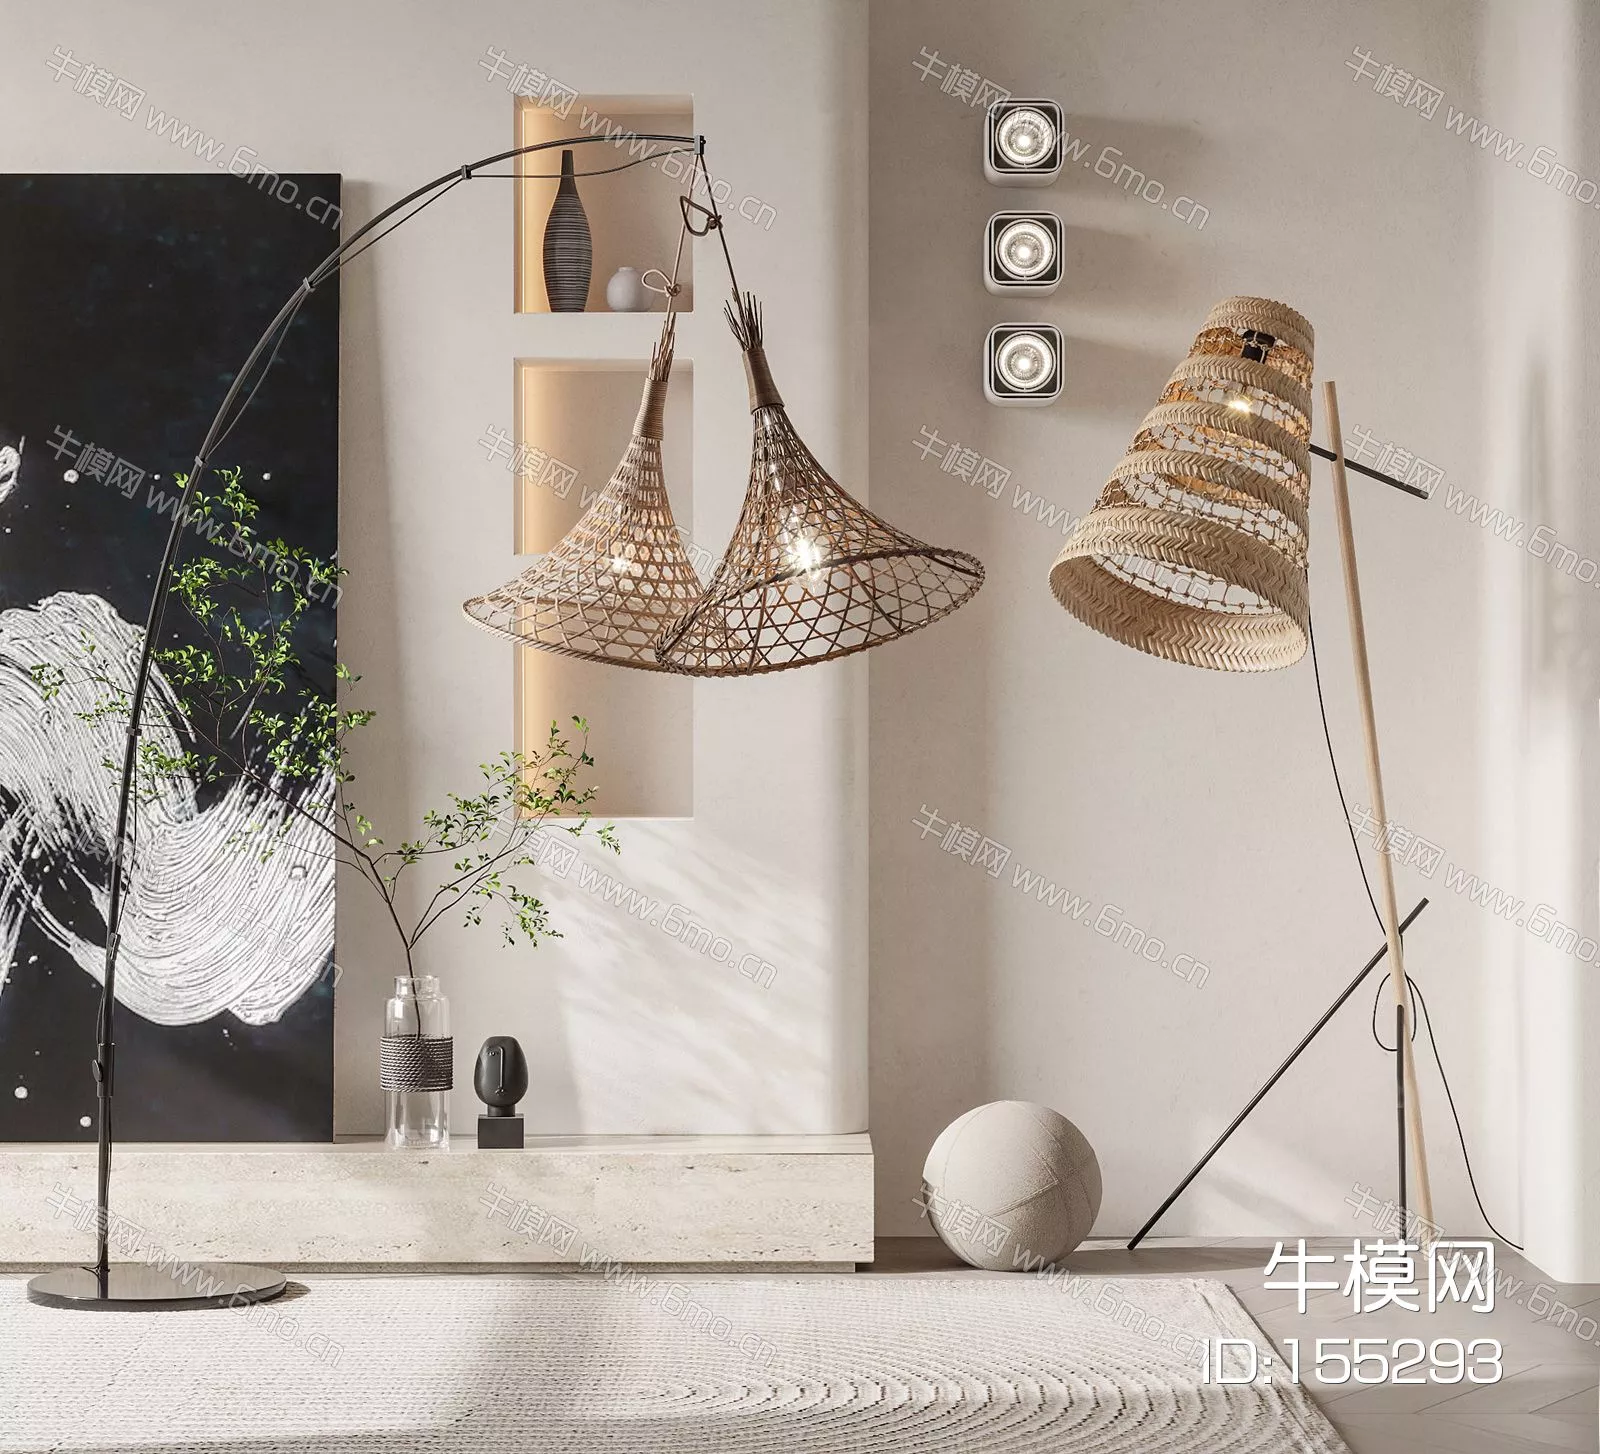 WABI SABI FLOOR LAMP - SKETCHUP 3D MODEL - VRAY - 155293